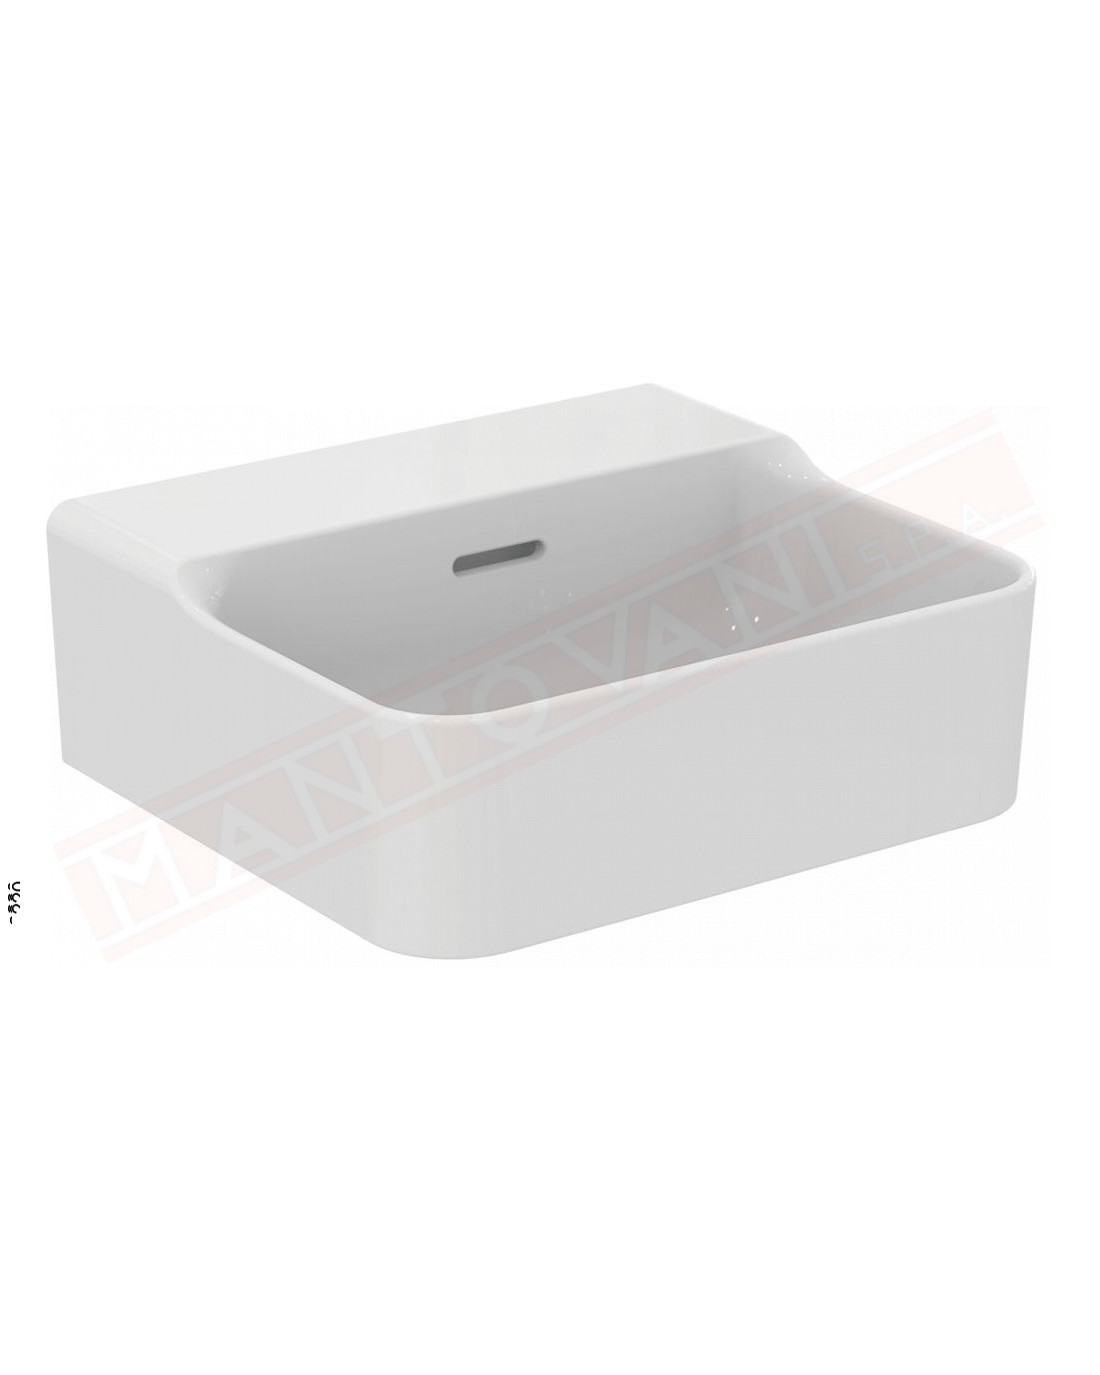 Ideal Standard Conca lavabo bagno da parete 40x35 cm con troppopieno e senza fori rubinetto